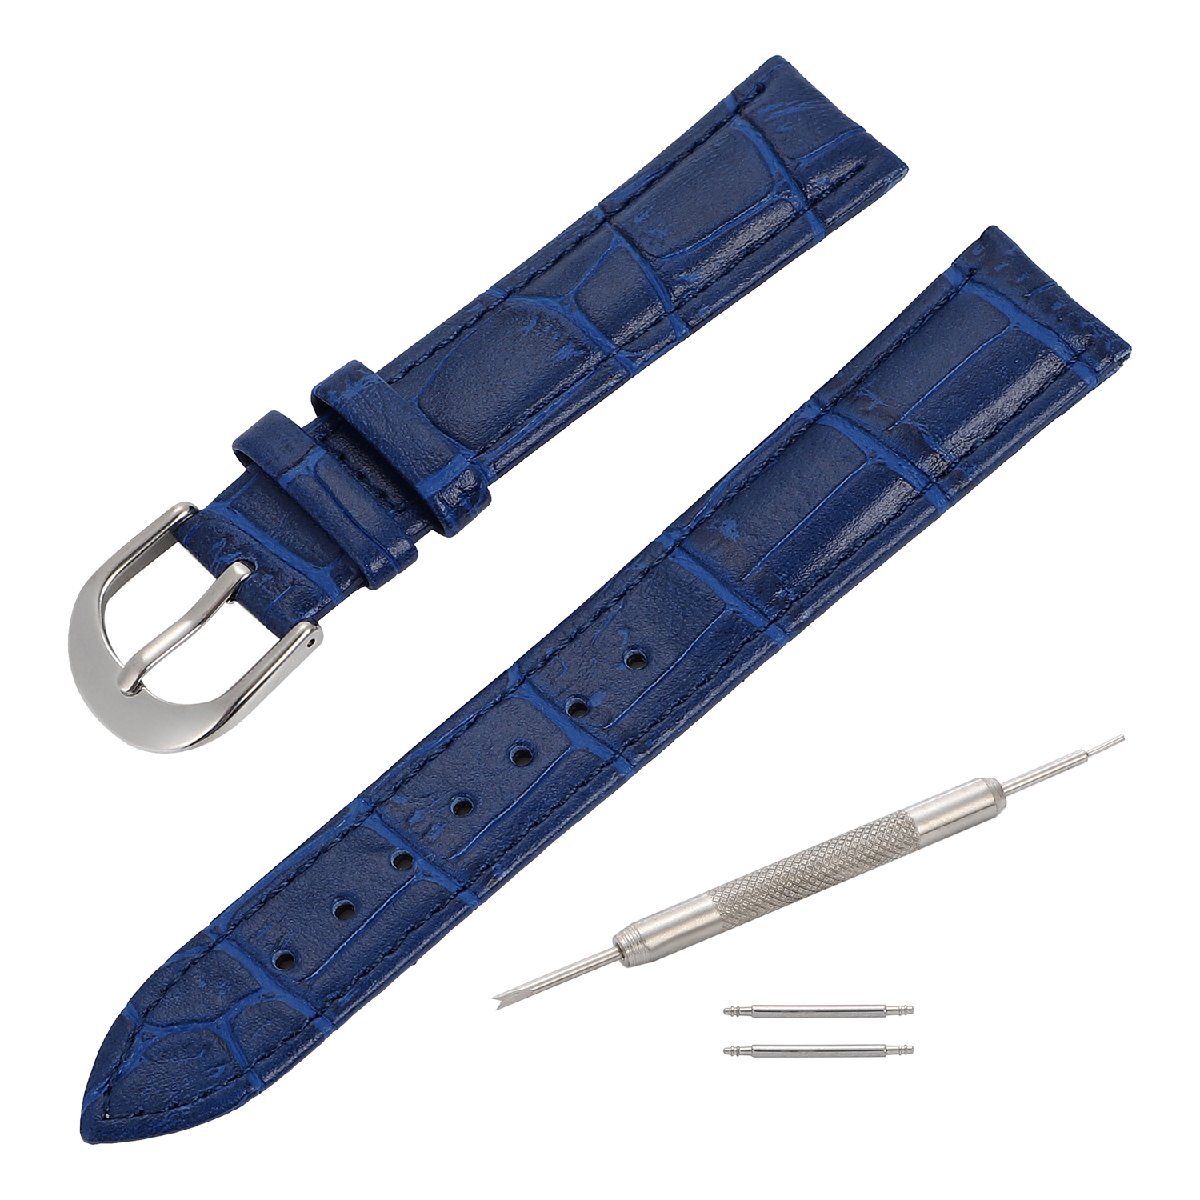  наручные часы ремень черный koen Boss голубой 14mm замена инструмент & spring палка есть телячья кожа мужской женский 